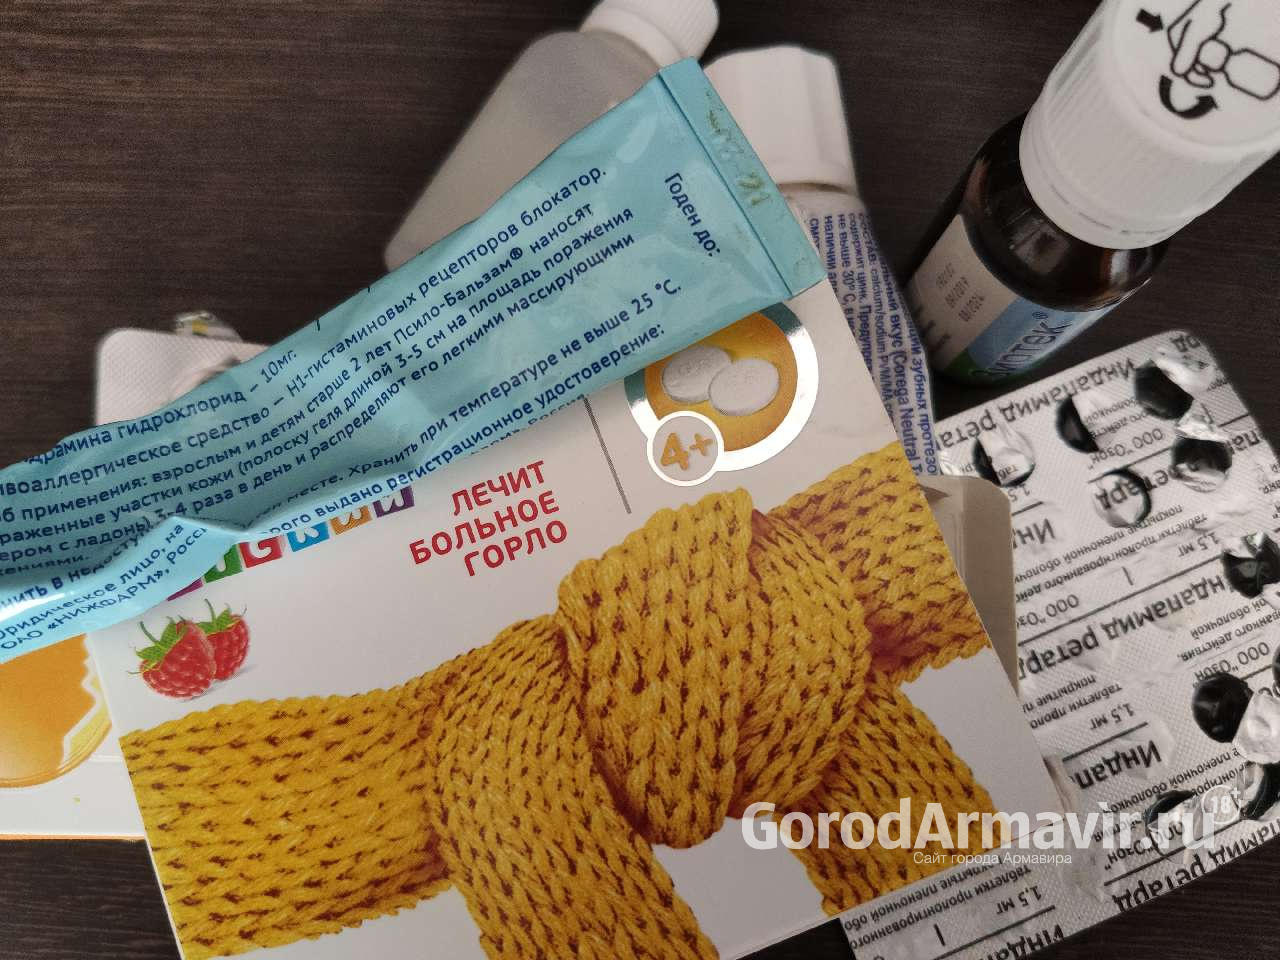 В Армавире до 13 октября будет работать горячая линия по вопросам профилактики гриппа и ОРВИ